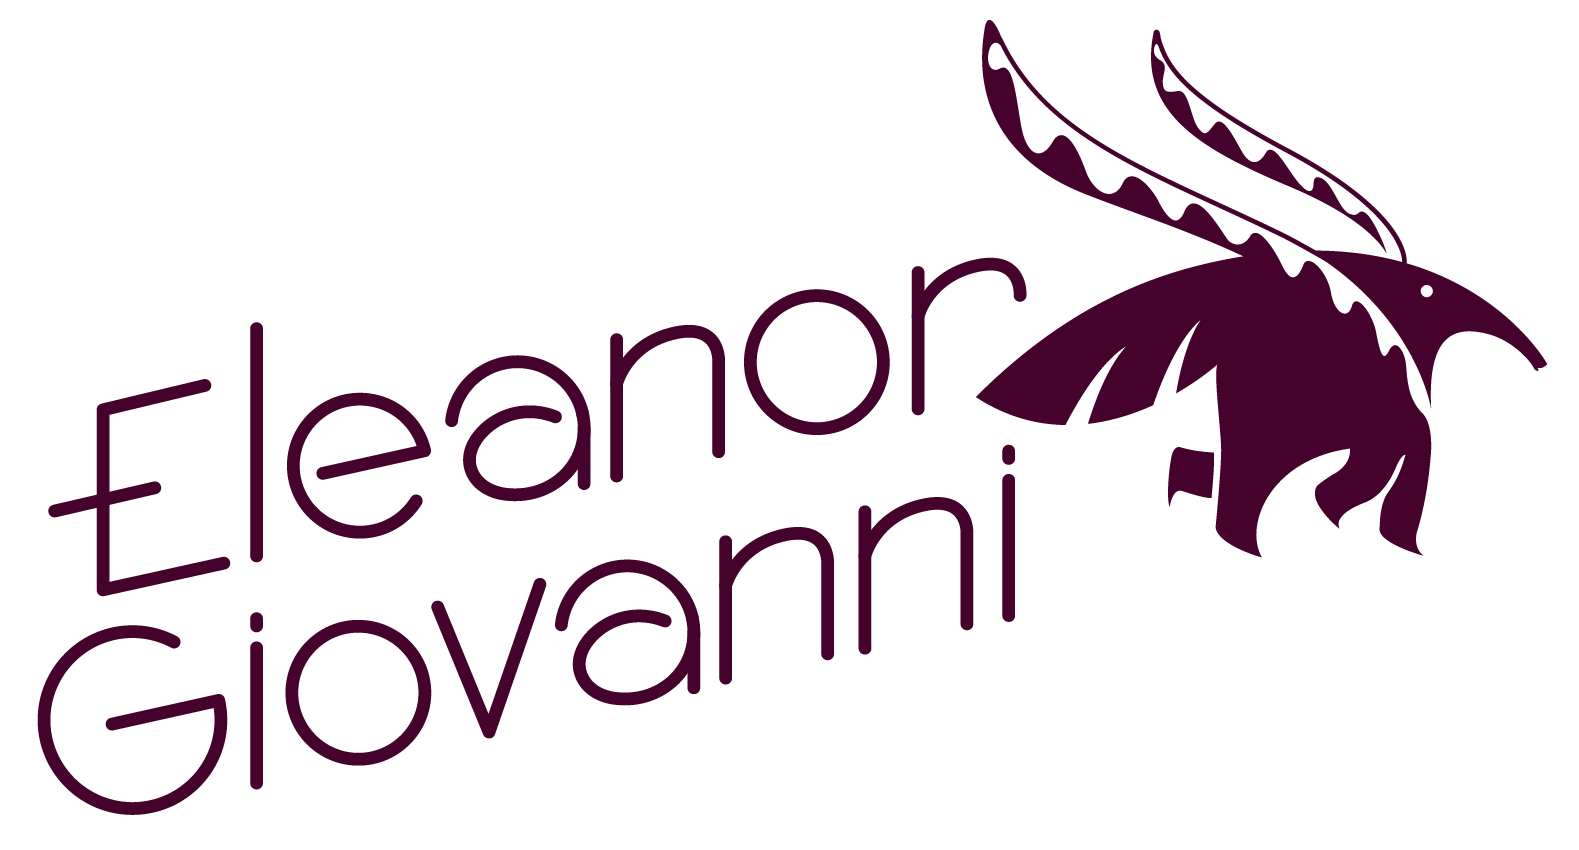 EleanorGiovanni